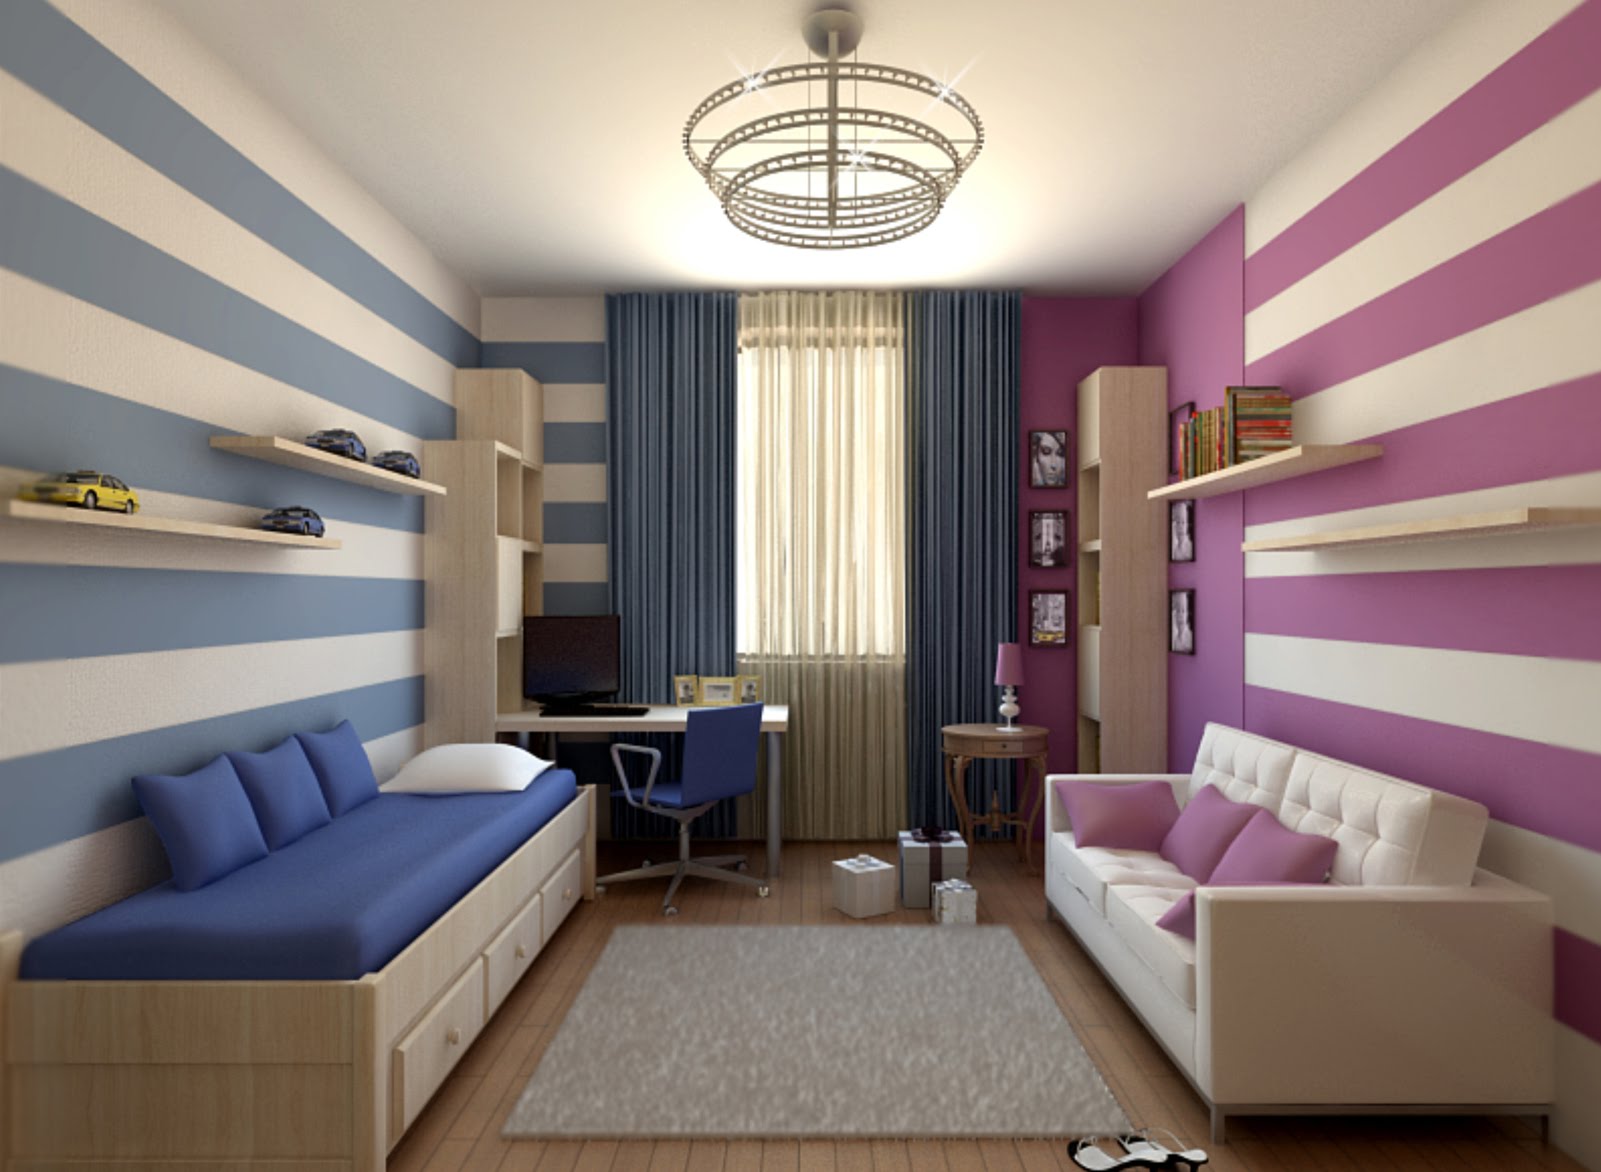 Дизайн комнаты для мальчика-подростка: идеи и советы